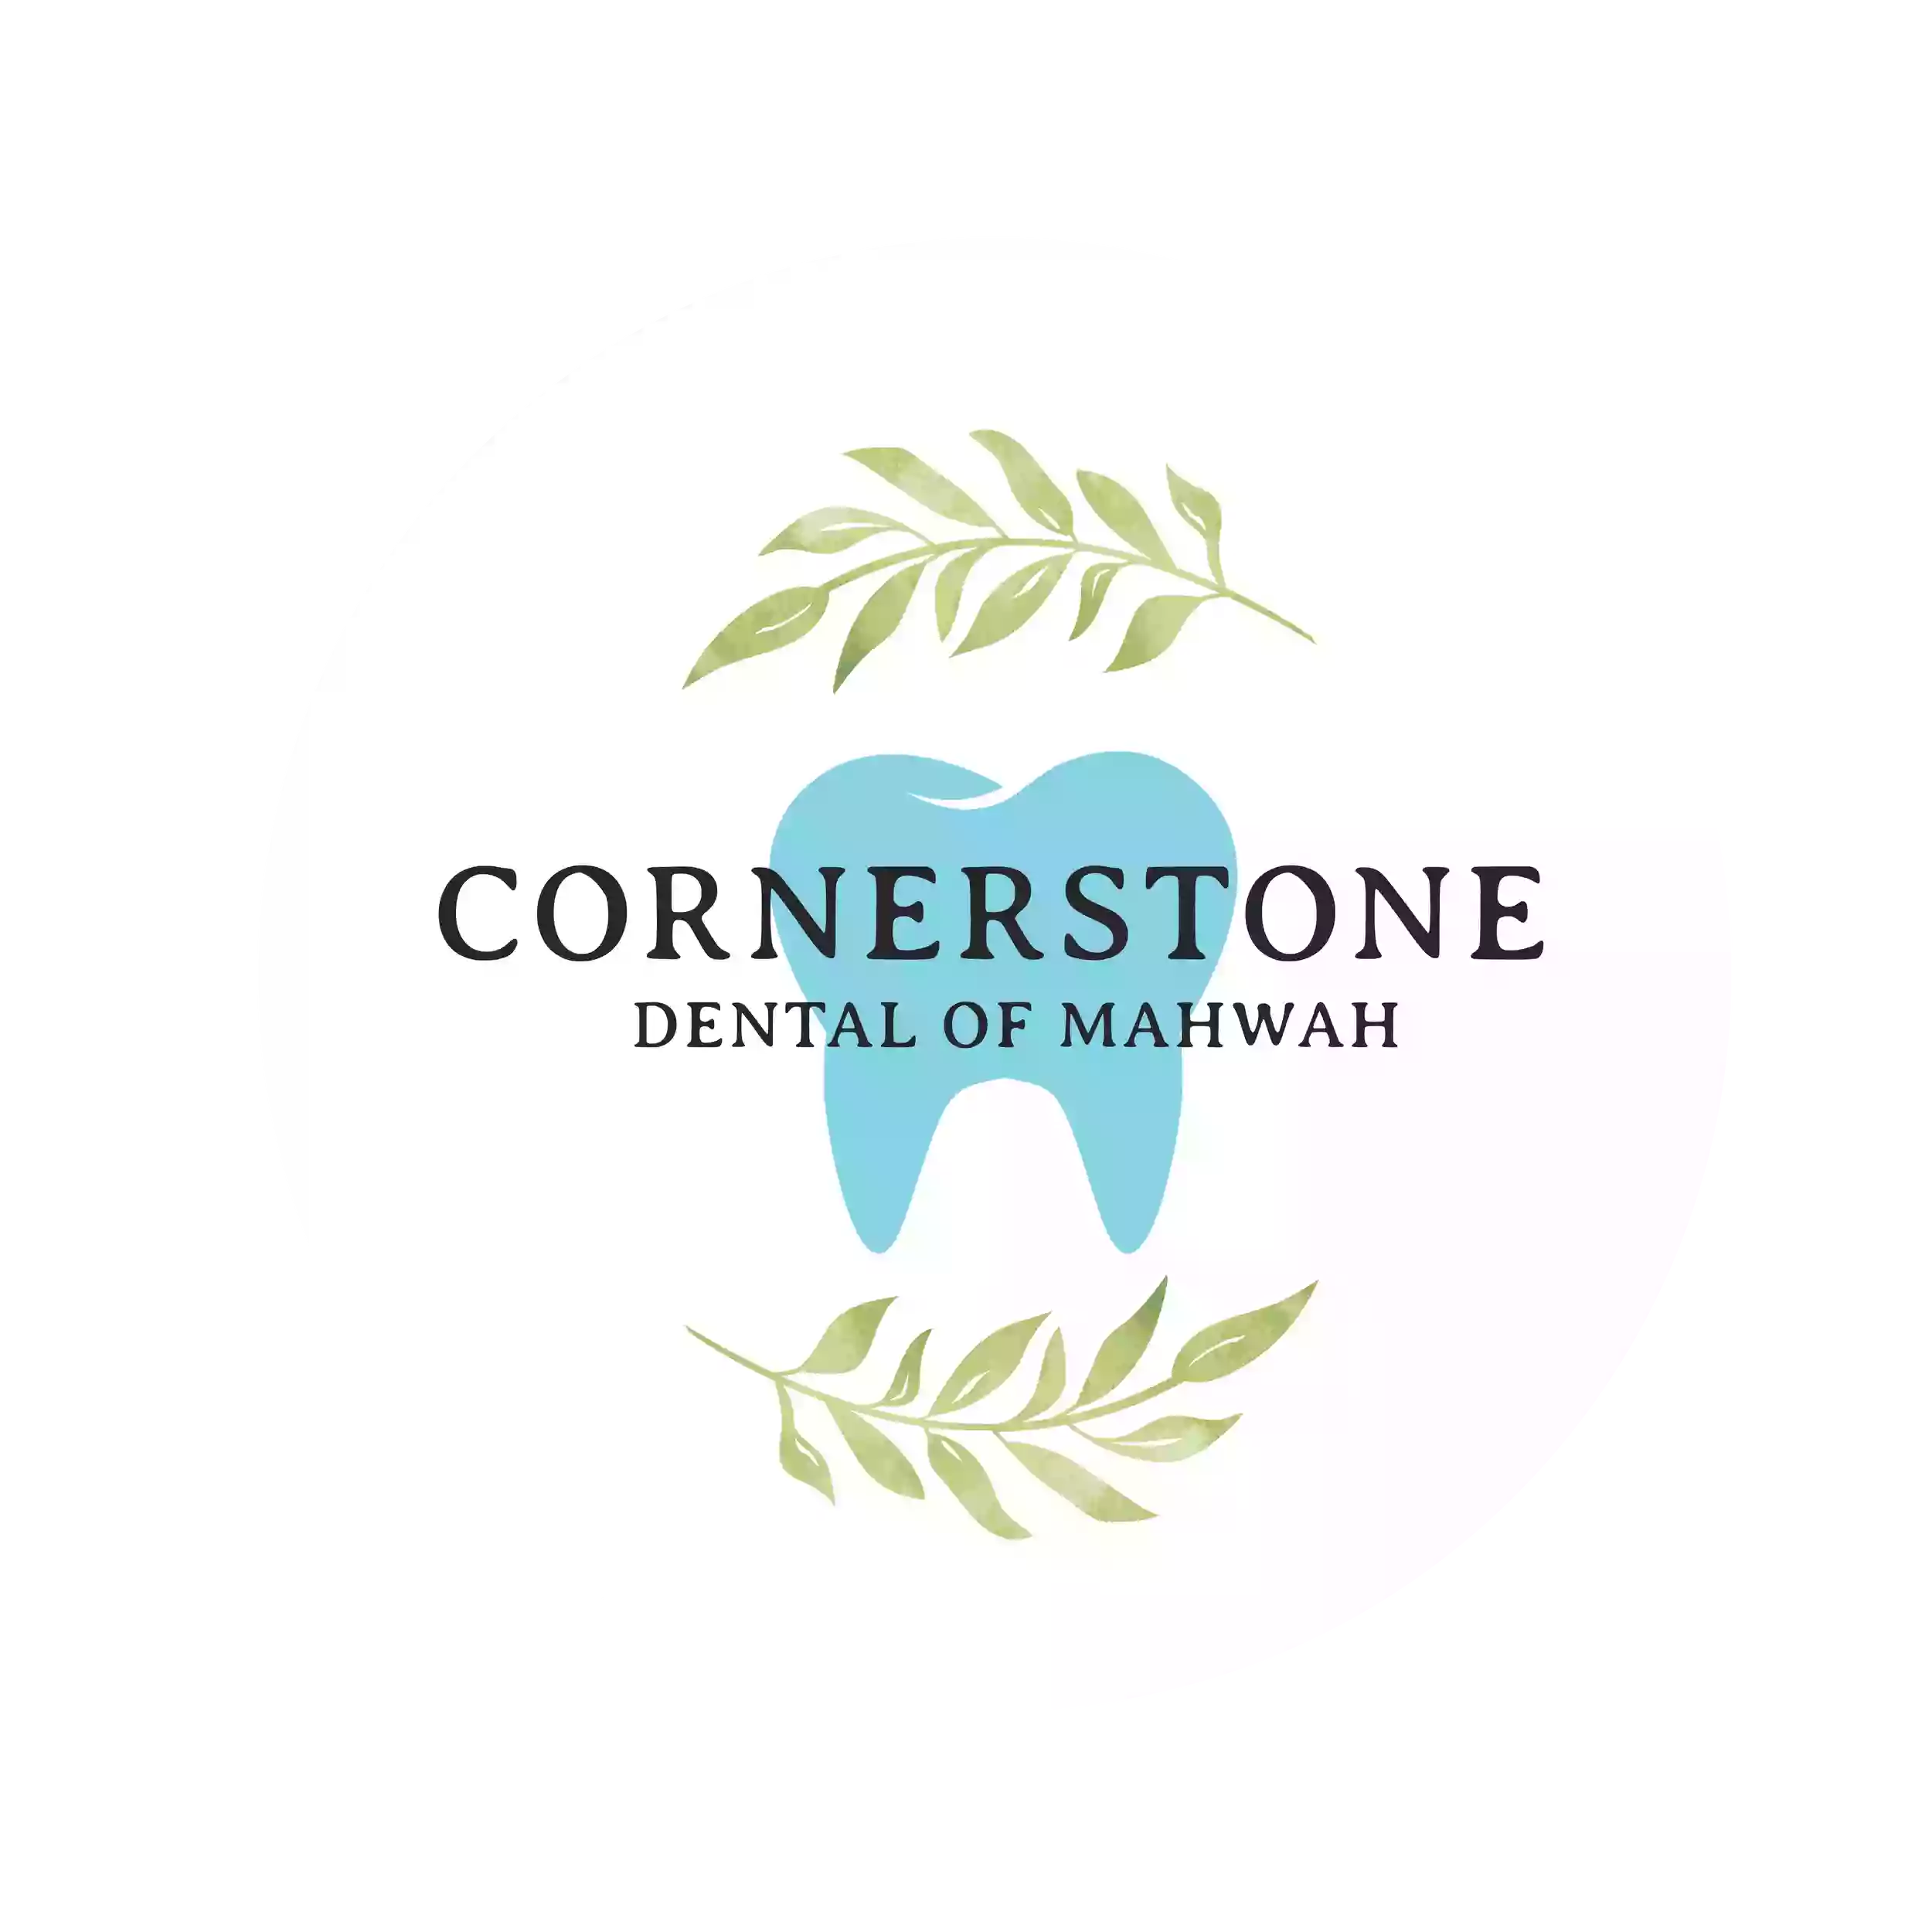 Cornerstone Dental Of Mahwah